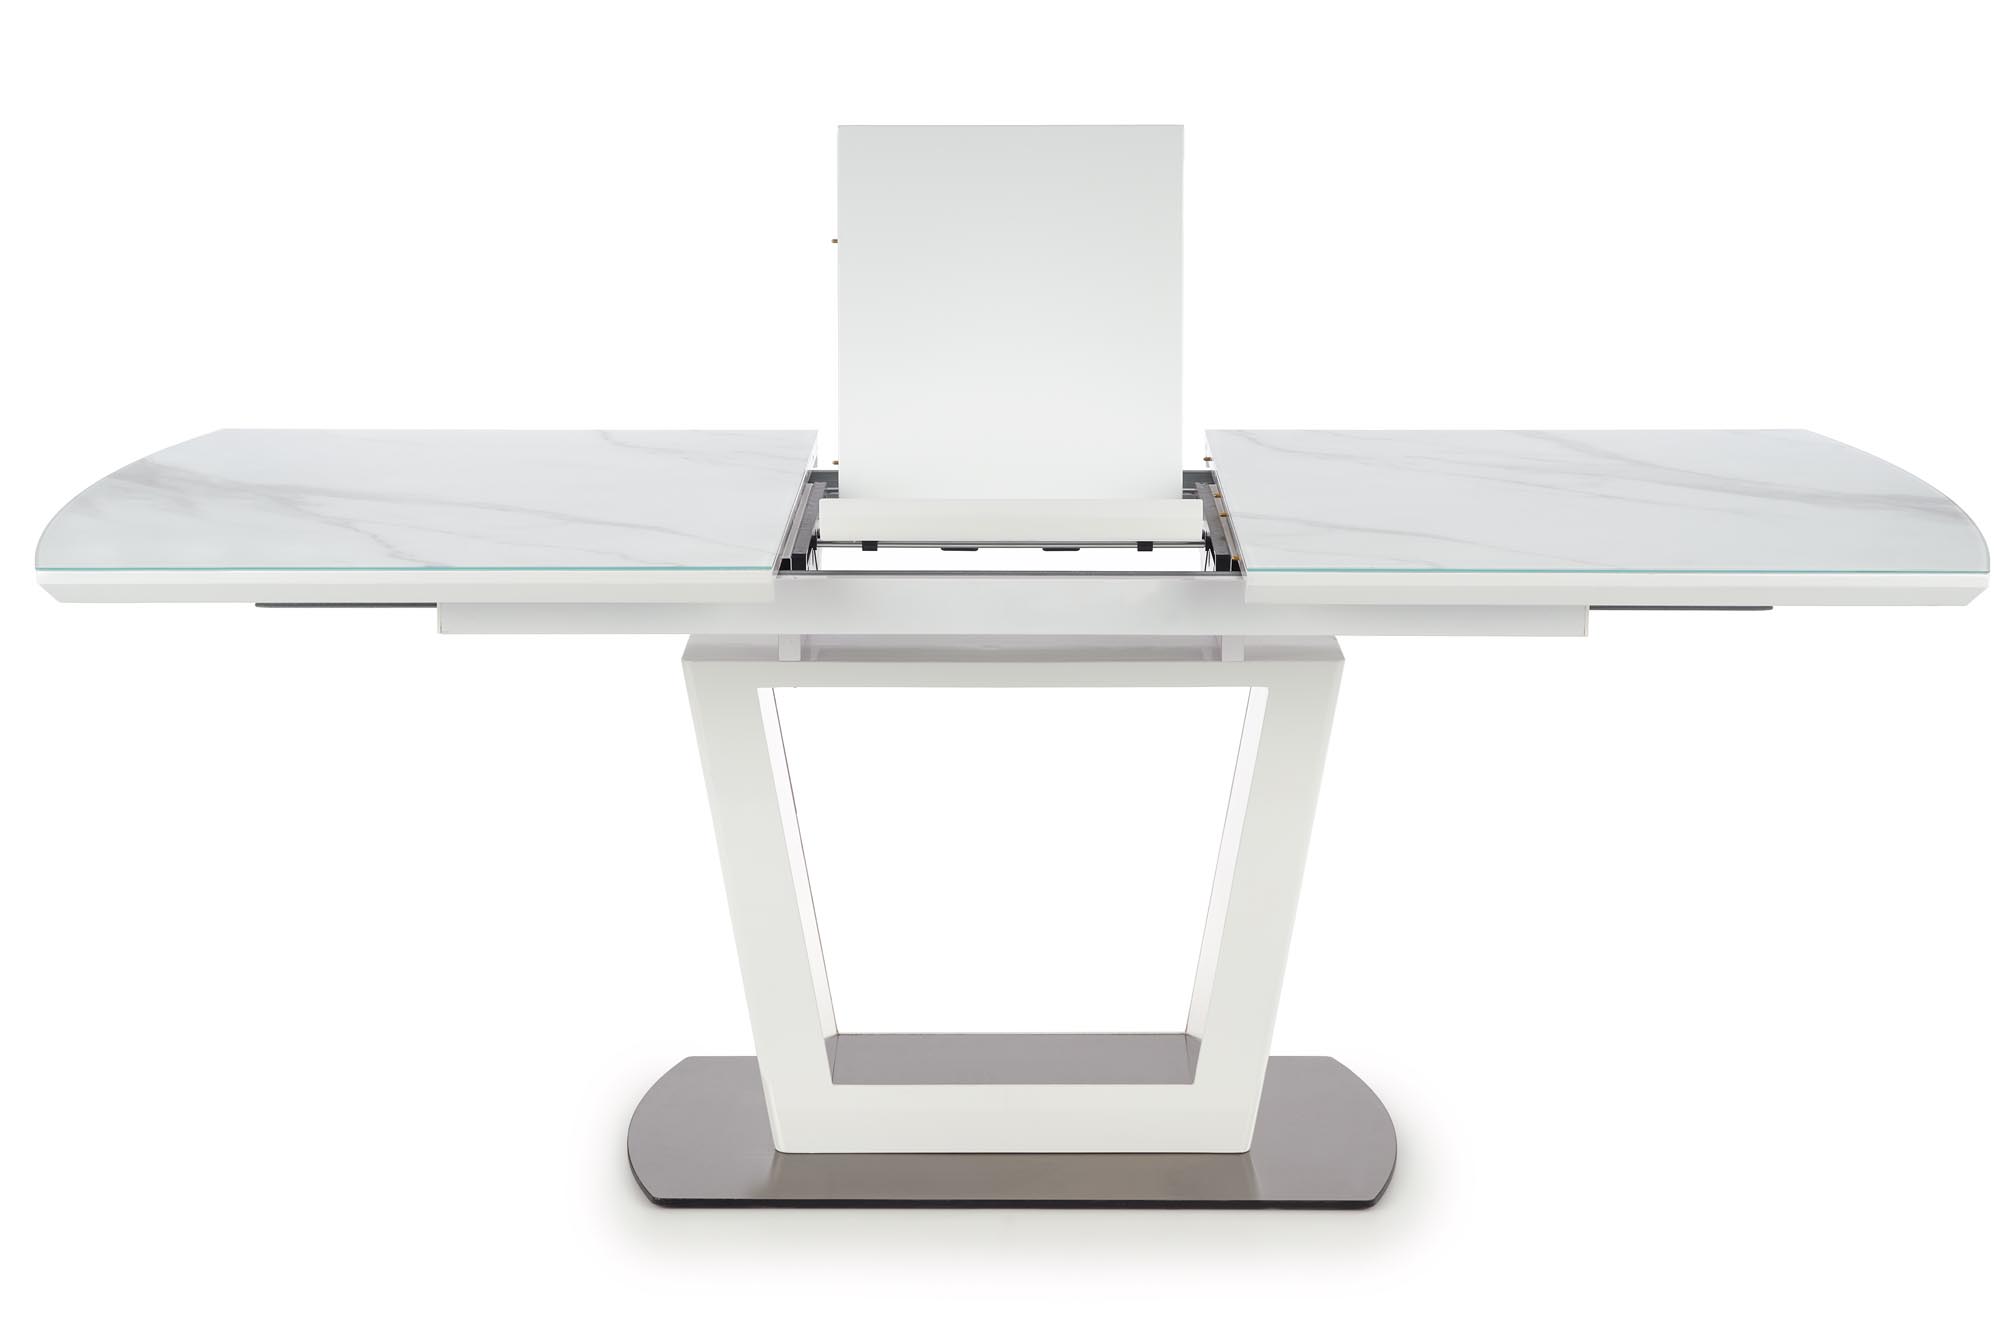 BLANCO asztal - asztallap - fehér márvány / fehér, láb - fehér blanco stůl rozkládací Deska - Bílý mramor / Bílý, noha - Bílý